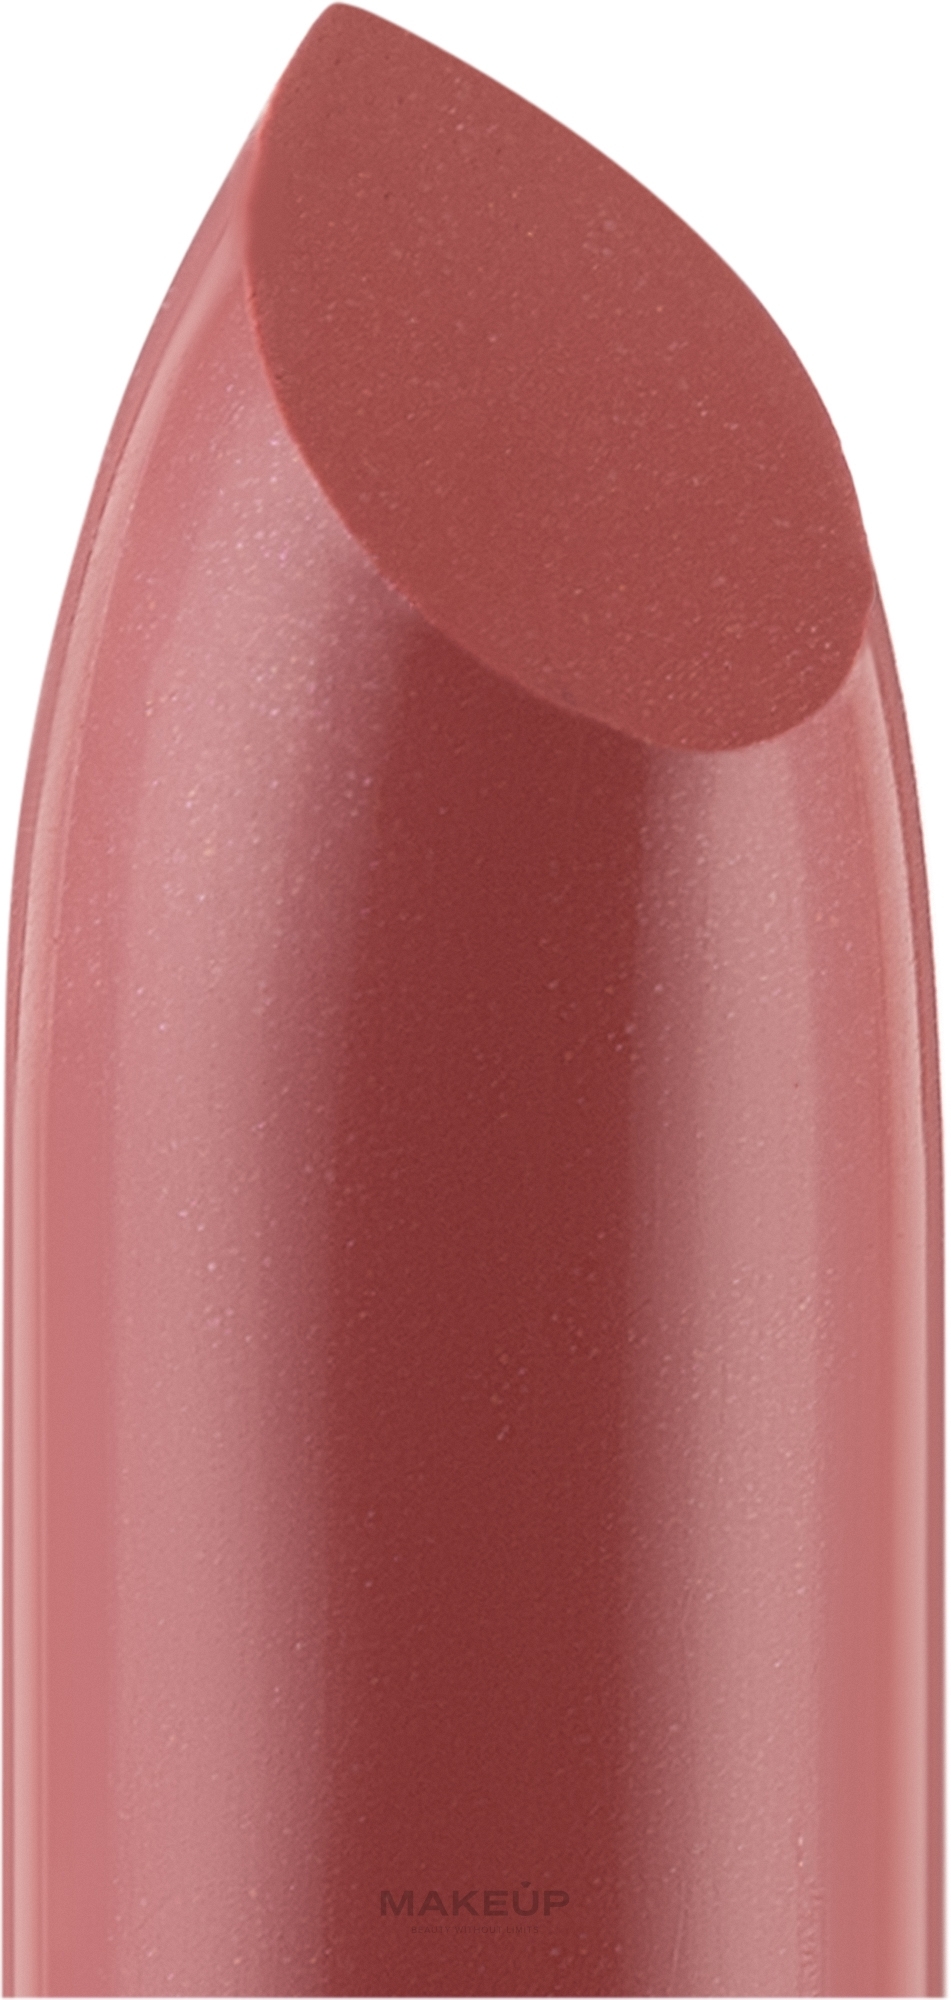 Губная помада - Avenir Cosmetics Glam Lipstick — фото 313 - Чайная роза